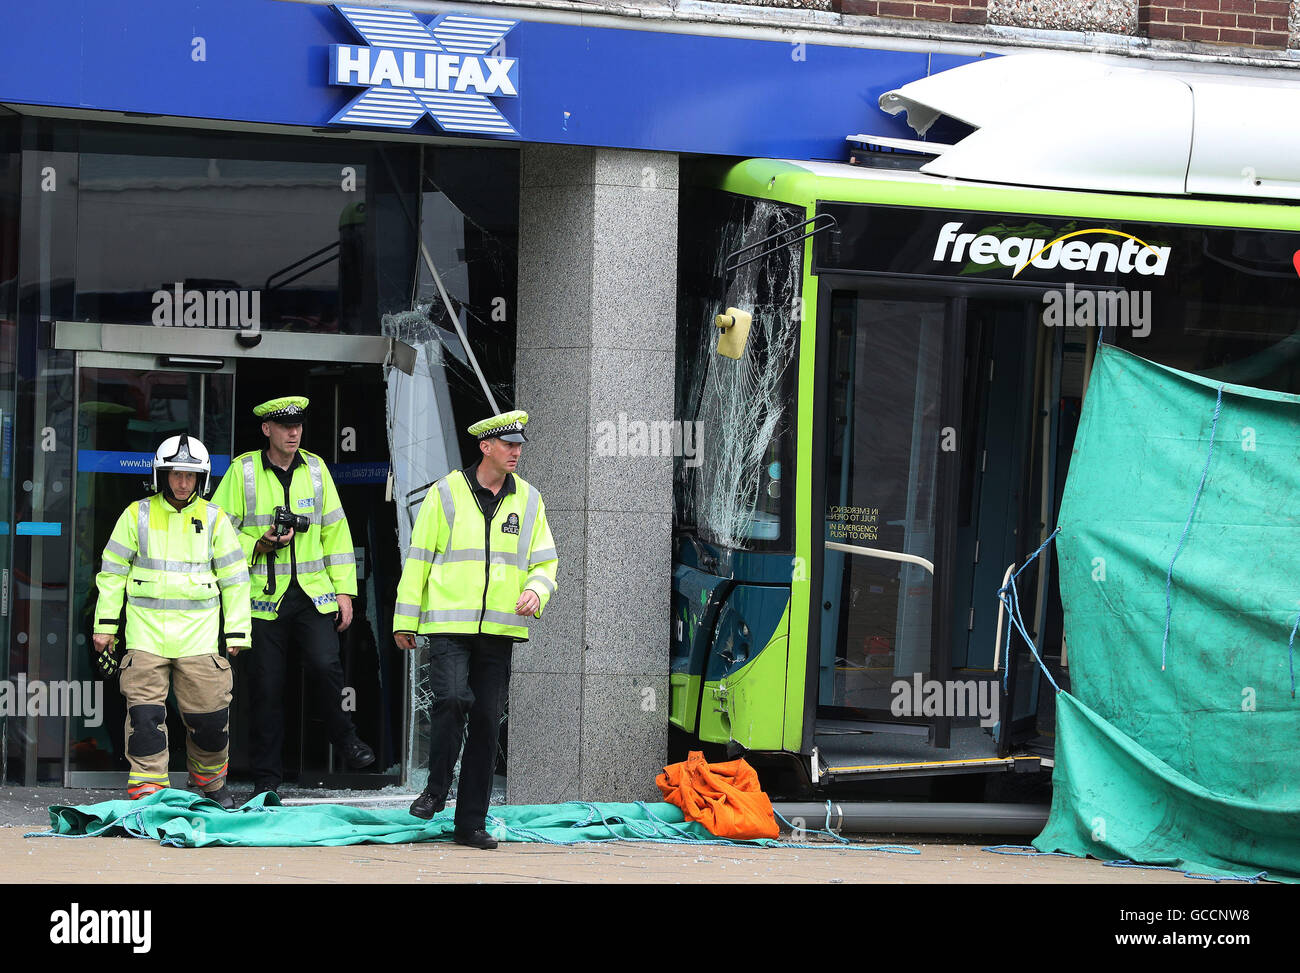 Die Szene in Darlington, wo eine ältere weibliche Fußgänger nach einem Bus starb hat, stürzte in einer Halifax Bank-Filiale. Stockfoto